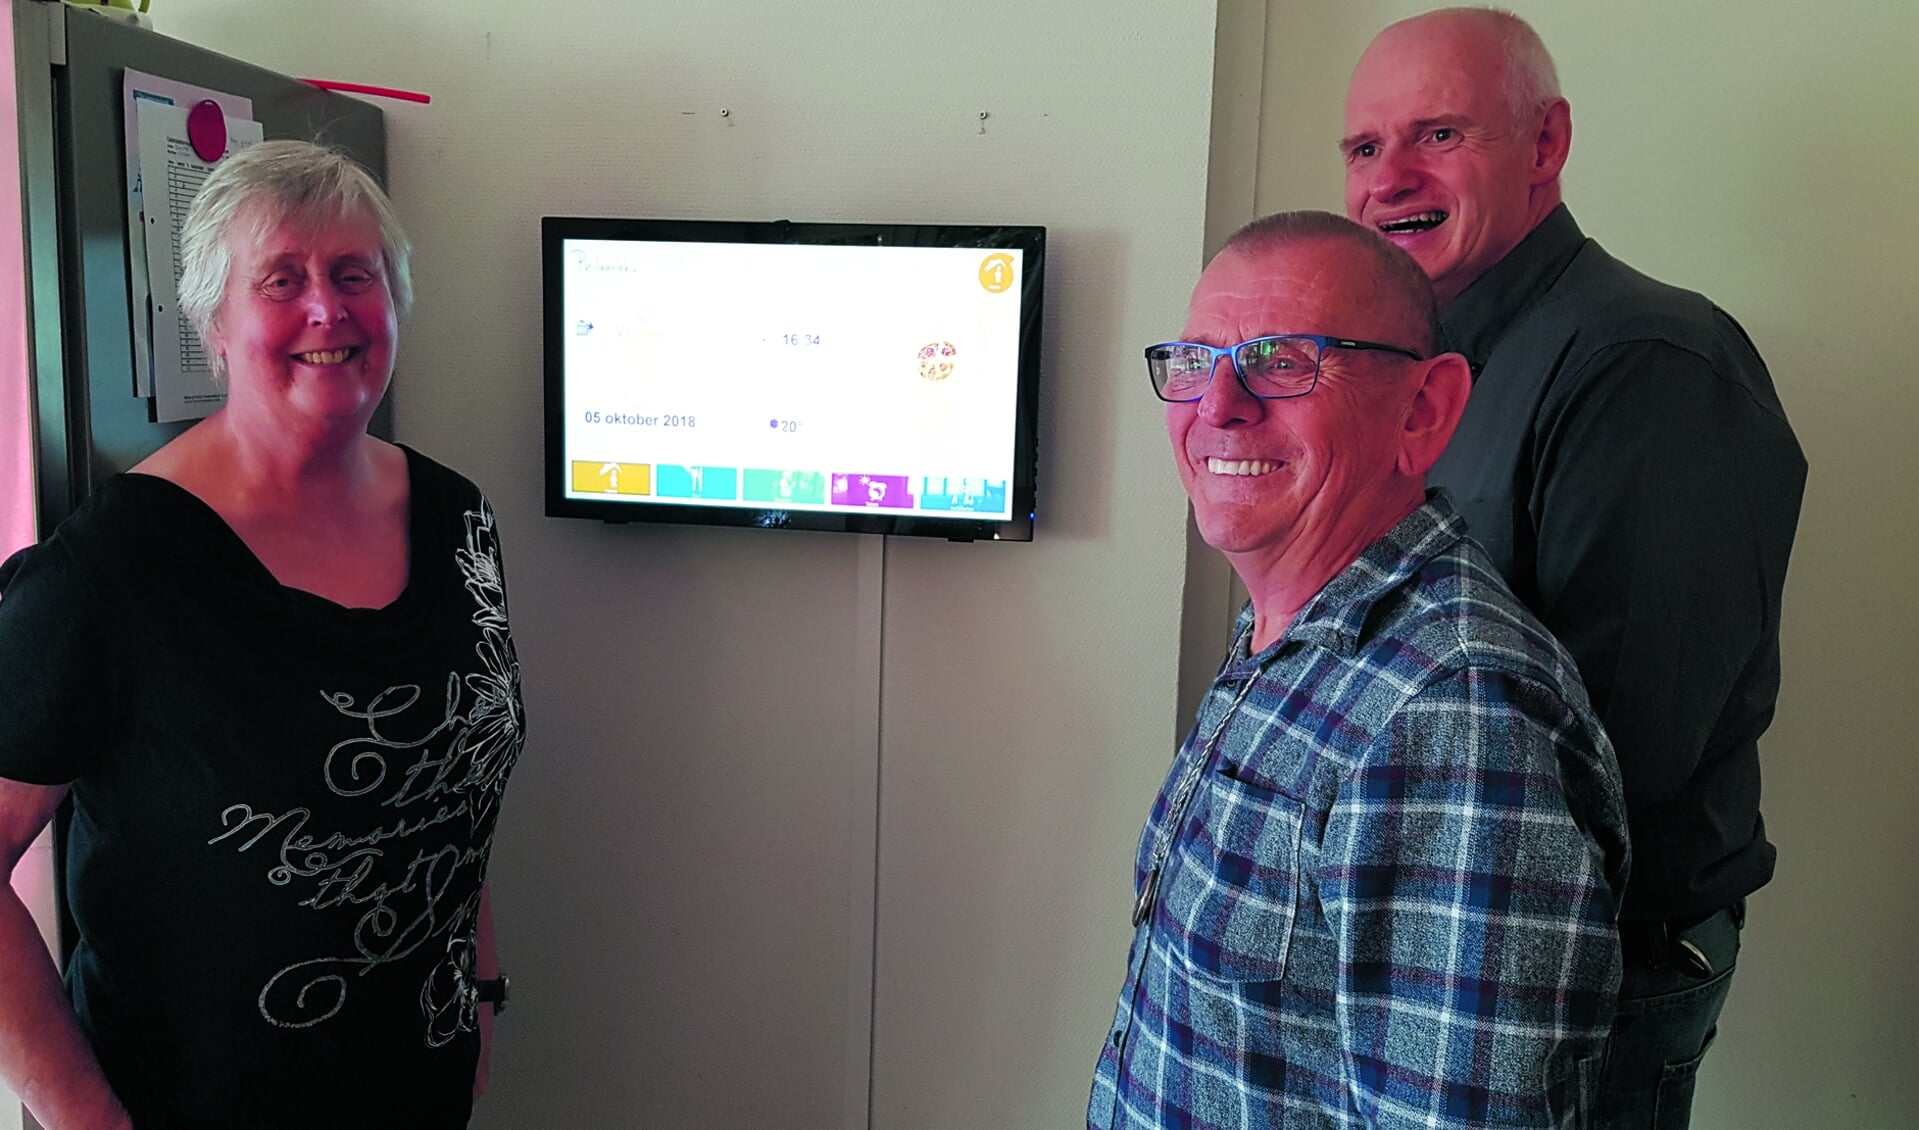 De bewoners Marjan, Gerrit en Pieter (vlnr) zijn inmiddels gewend aan het digitale bord. (foto Rodi Media)